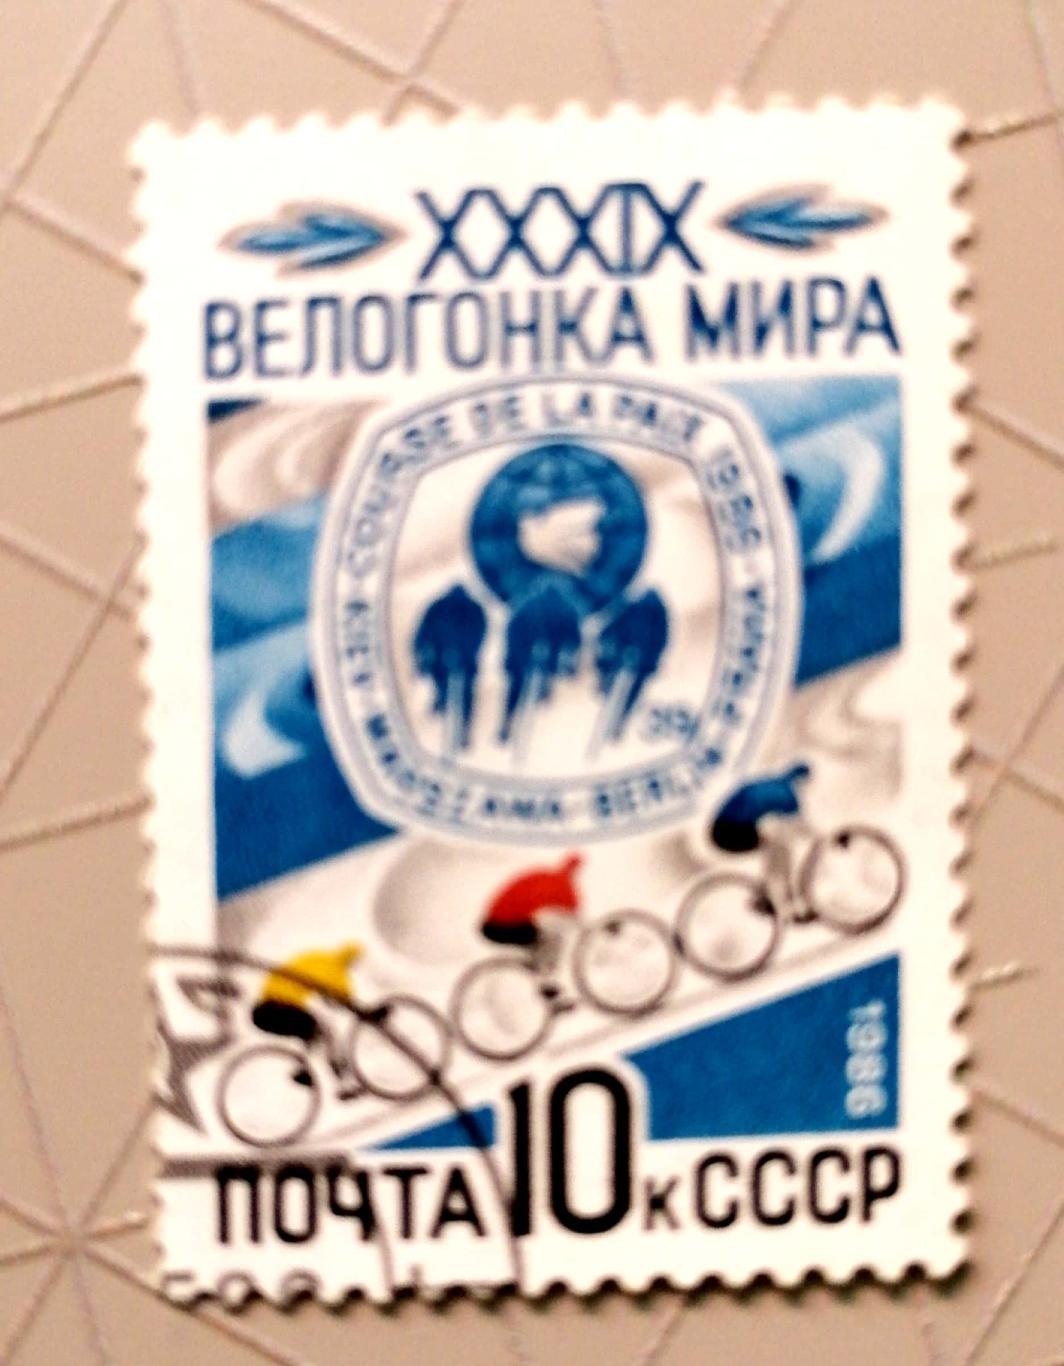 Велогонка мира-1986